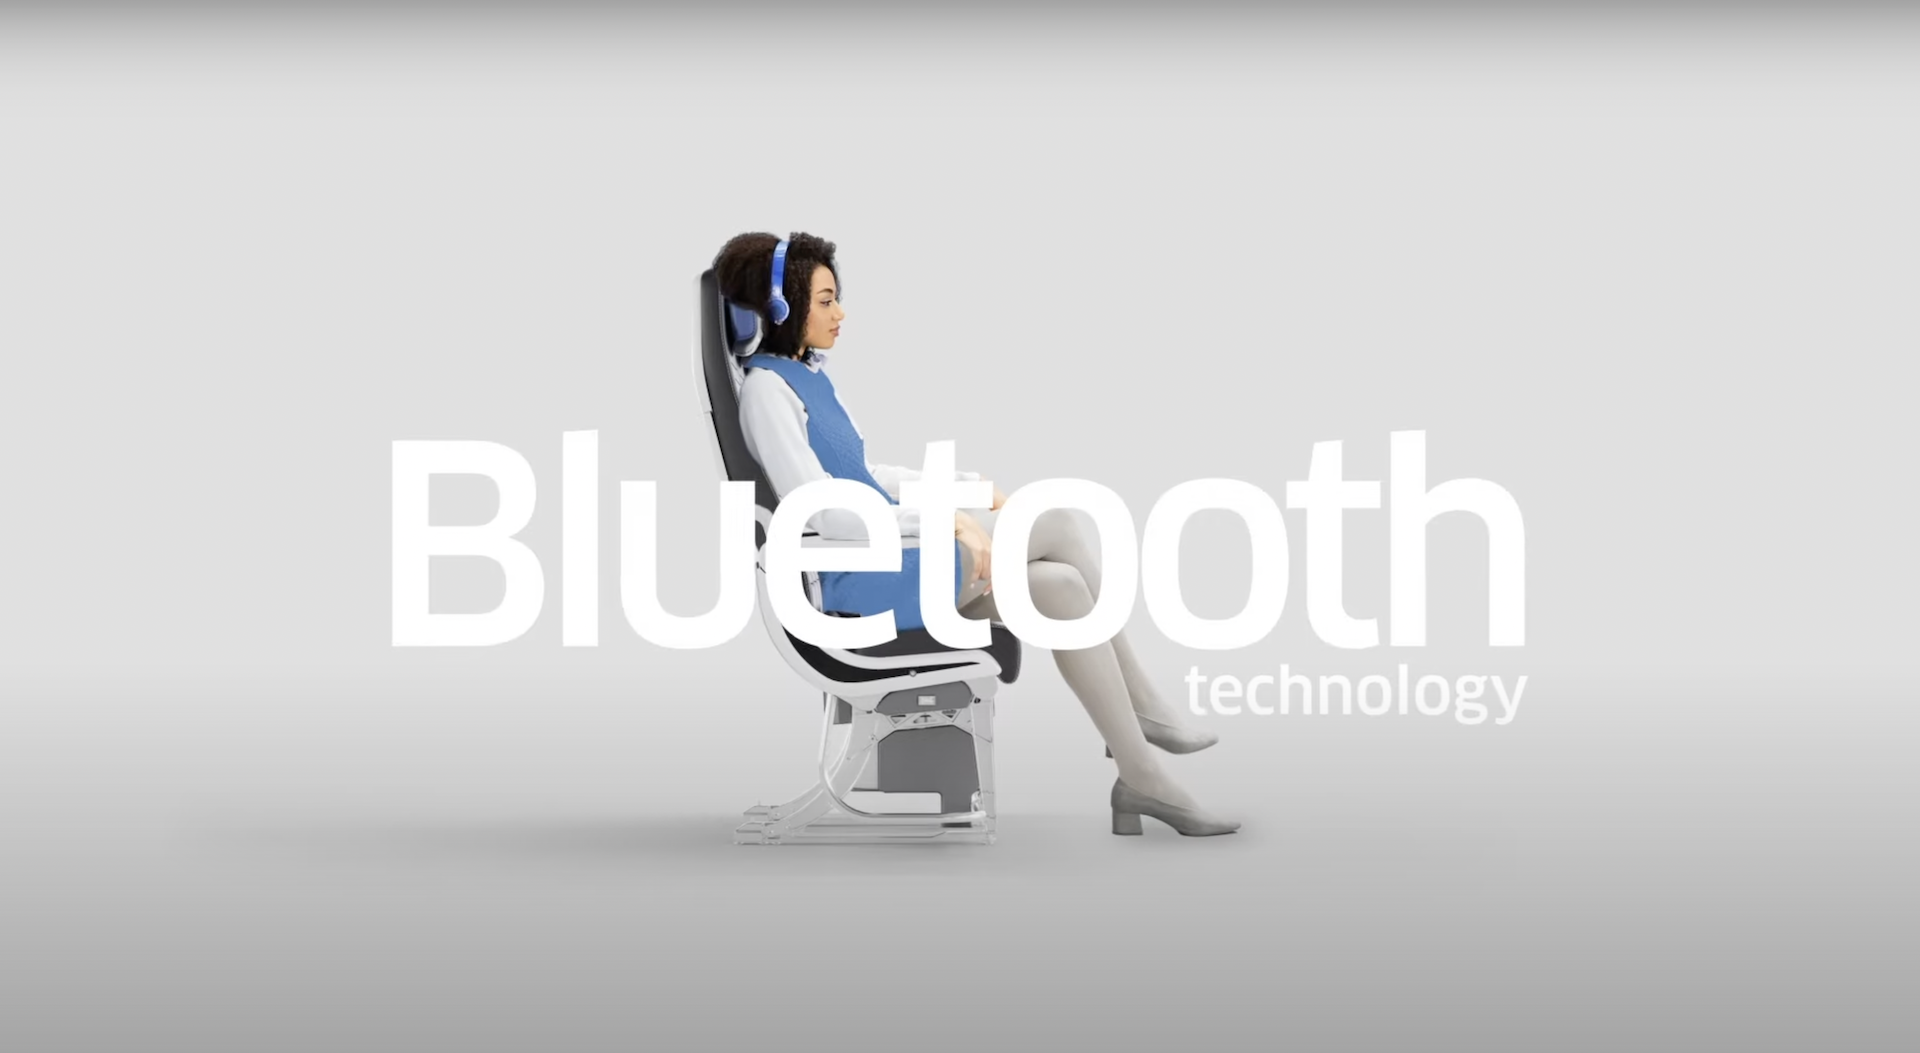 Los nuevos aviones de United: Wi-Fi, Bluetooth y más espacio. Video